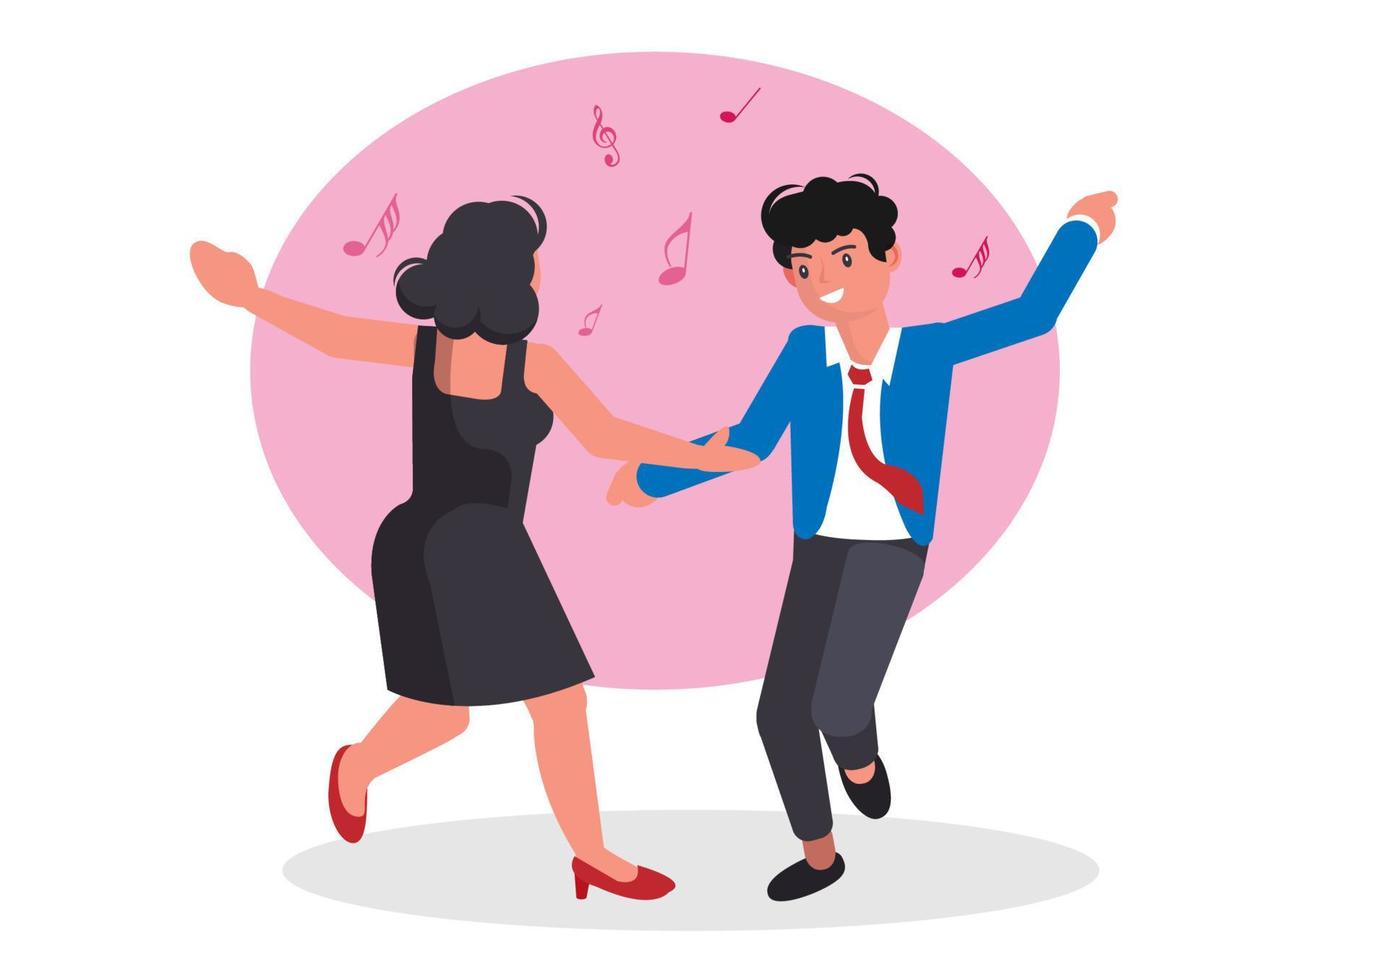 les femmes et les hommes aiment danser sur de la musique entraînante lors des fêtes. vecteur d'illustration de dessin animé de style plat